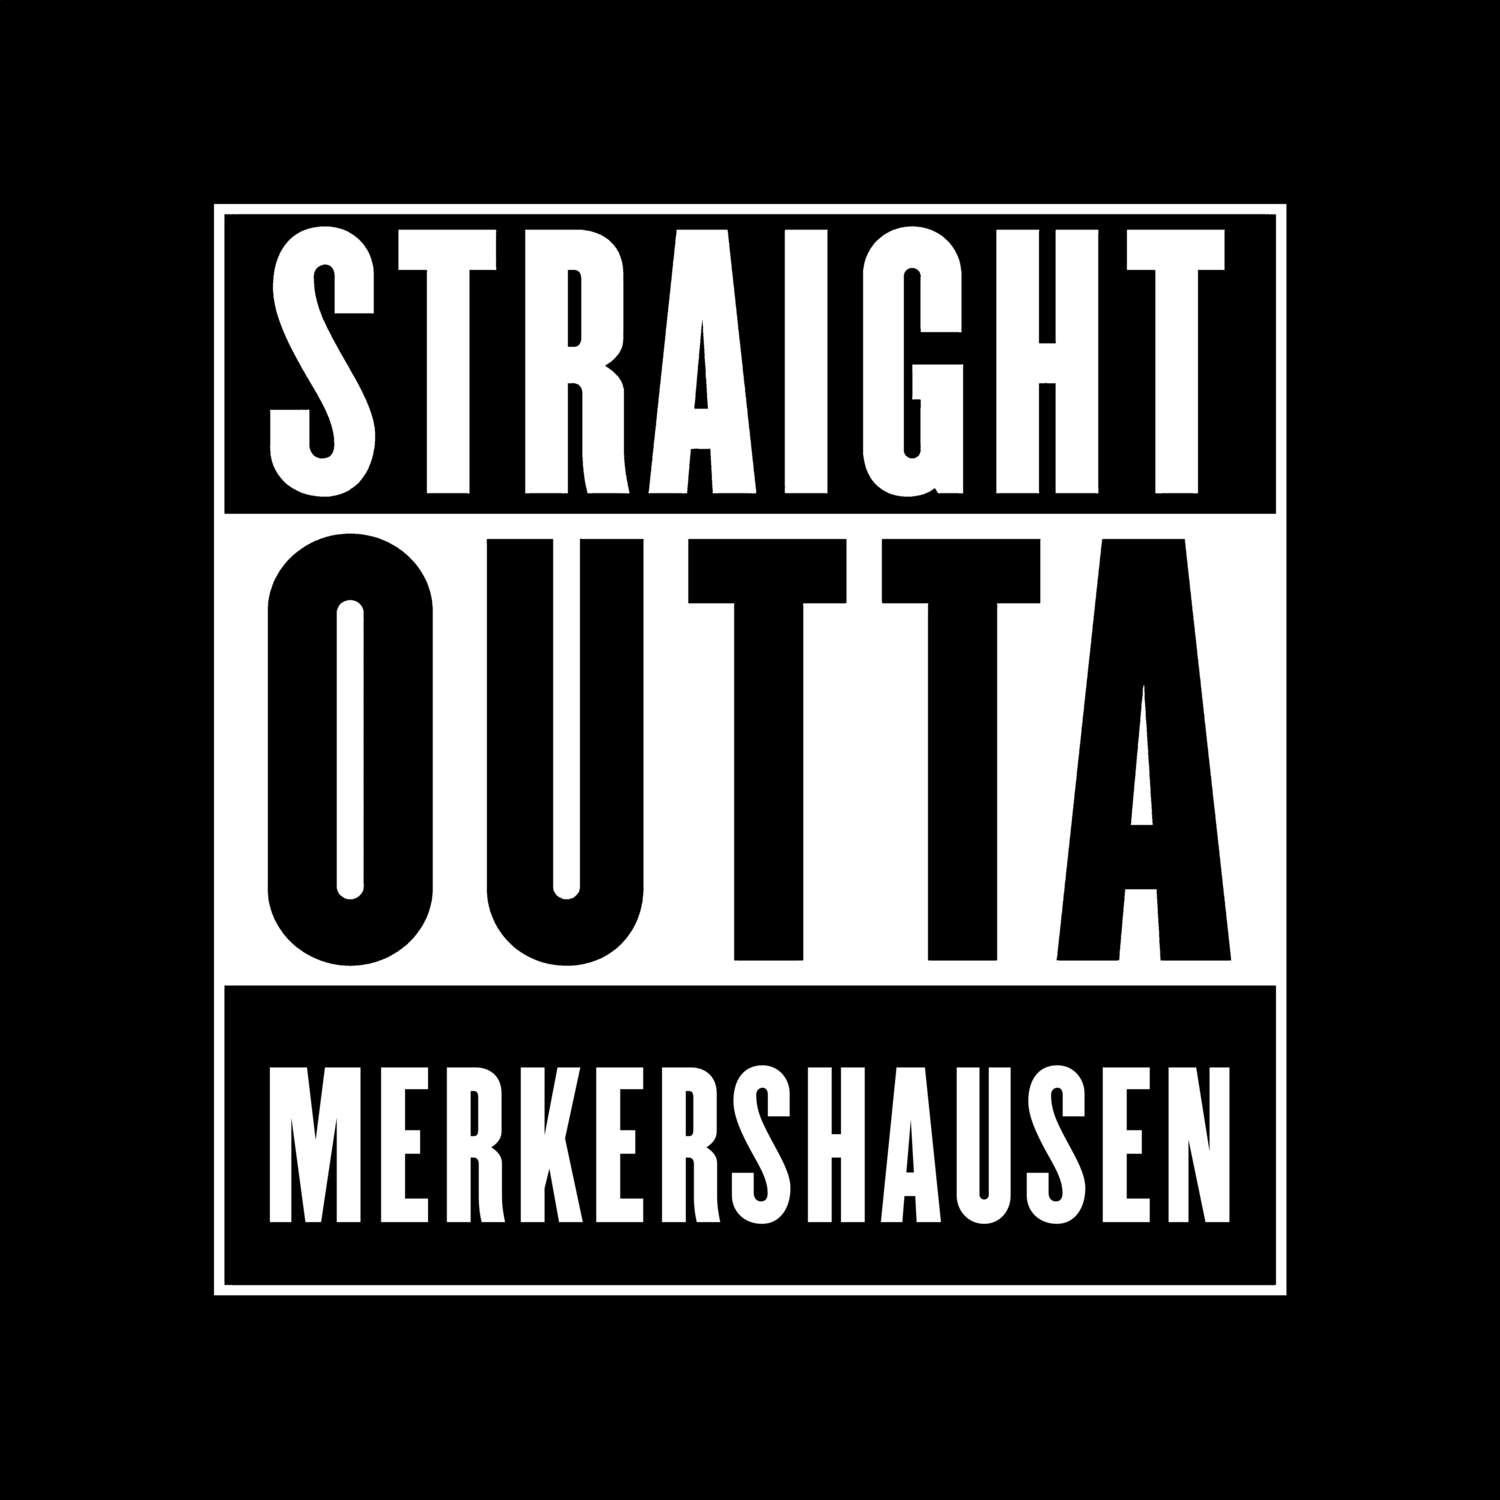 Merkershausen T-Shirt »Straight Outta«